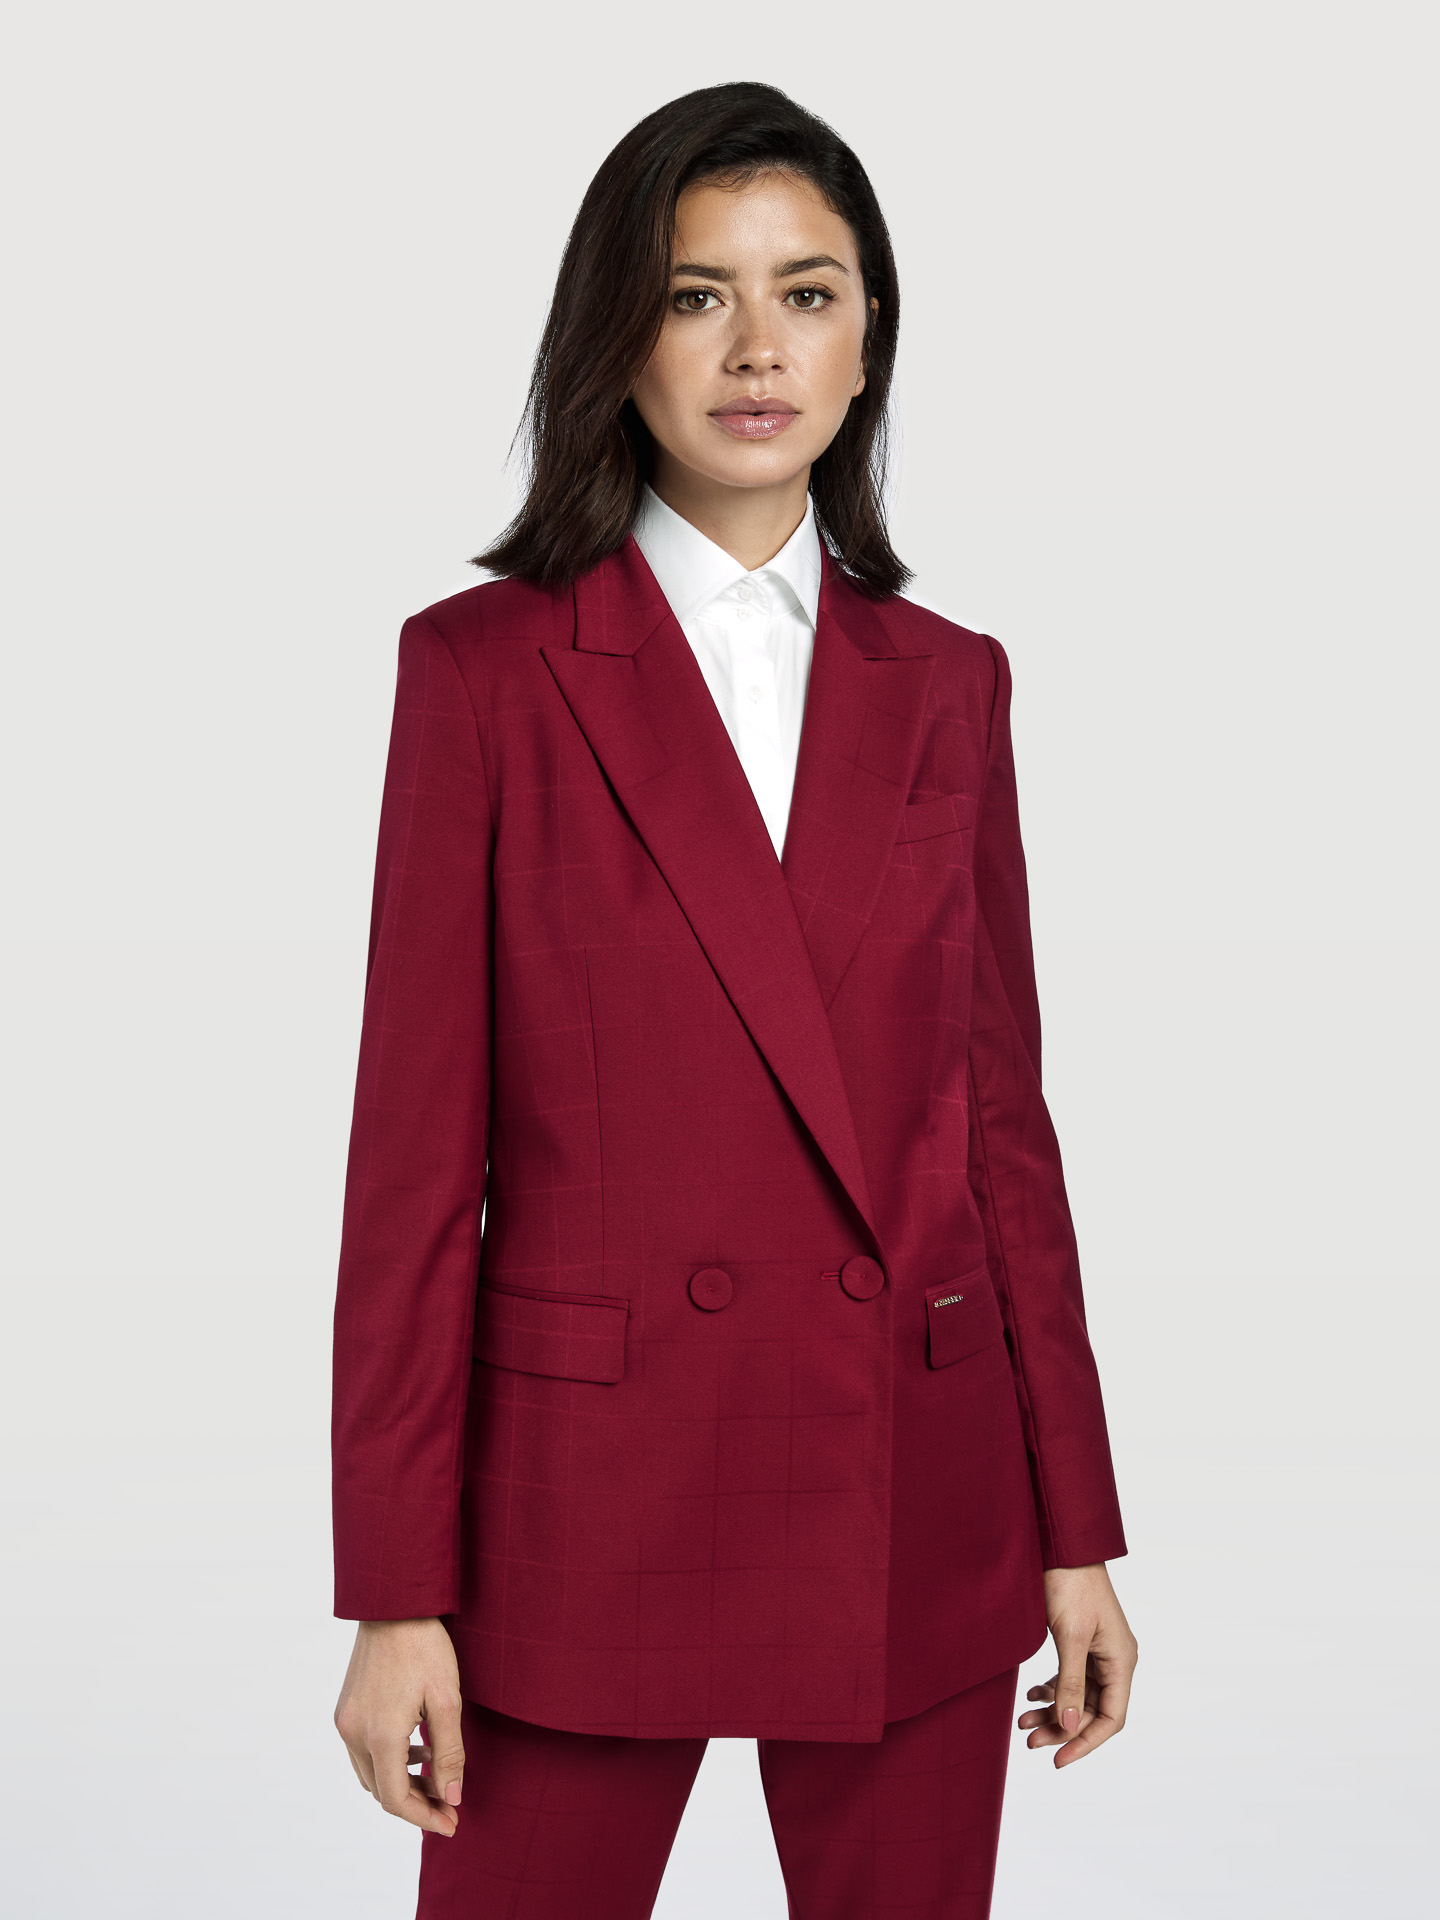 Suit Blazer Bordeaux Classic Woman